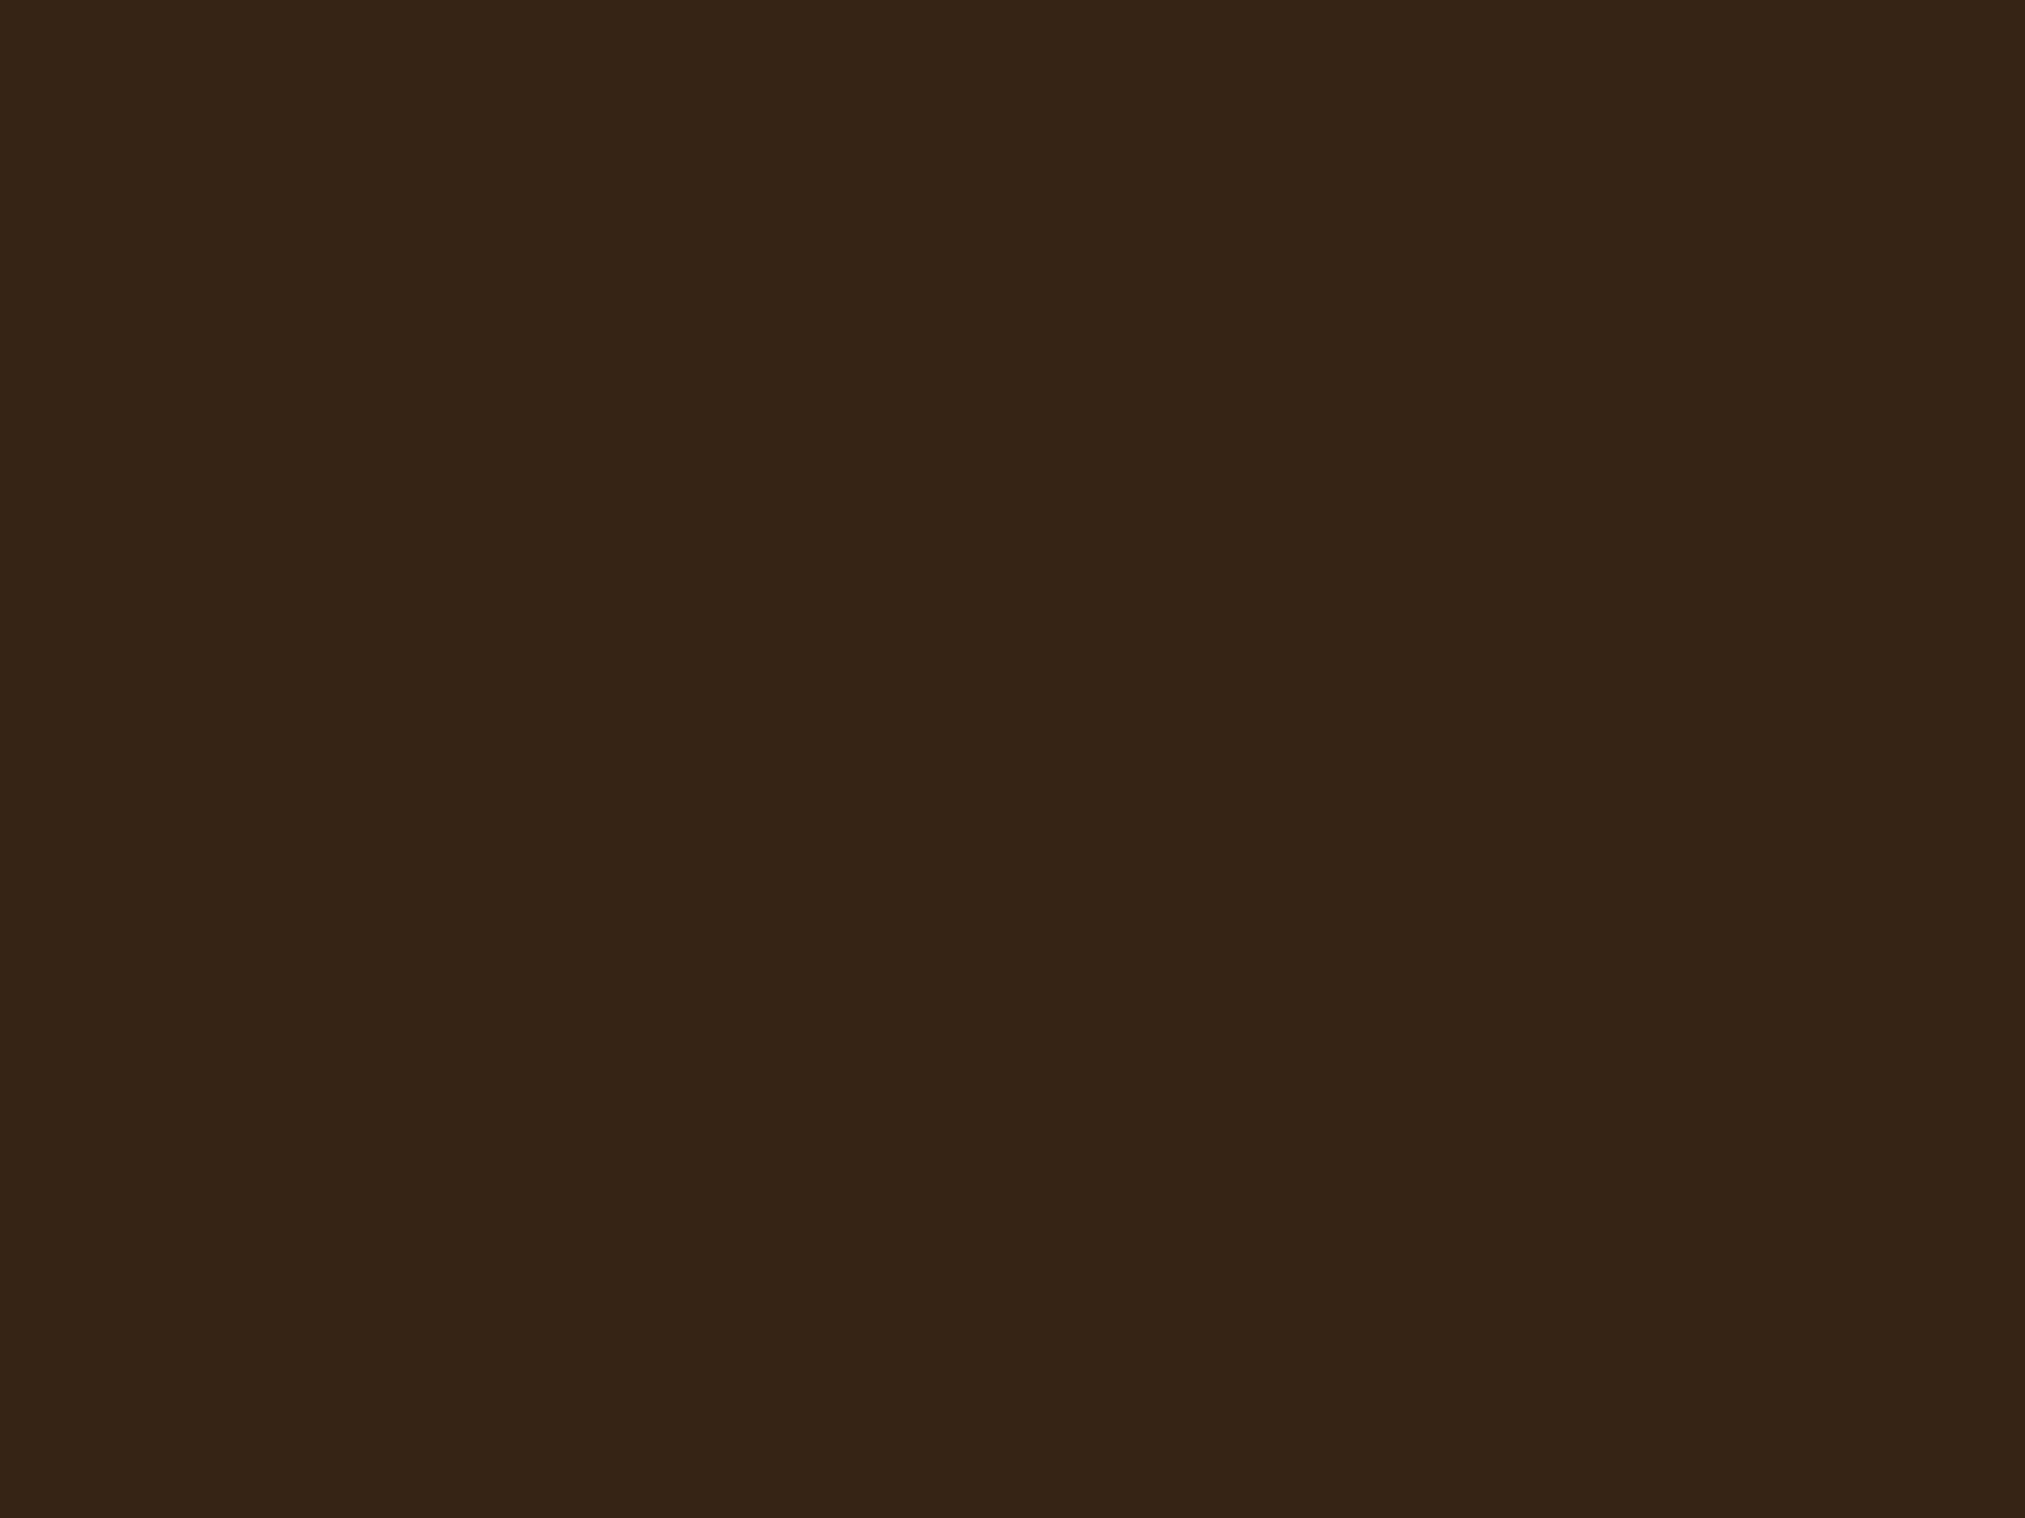 Николай Петров. Сватовство чиновника к дочери портного. 1862. Государственная Третьяковская галерея, Москва